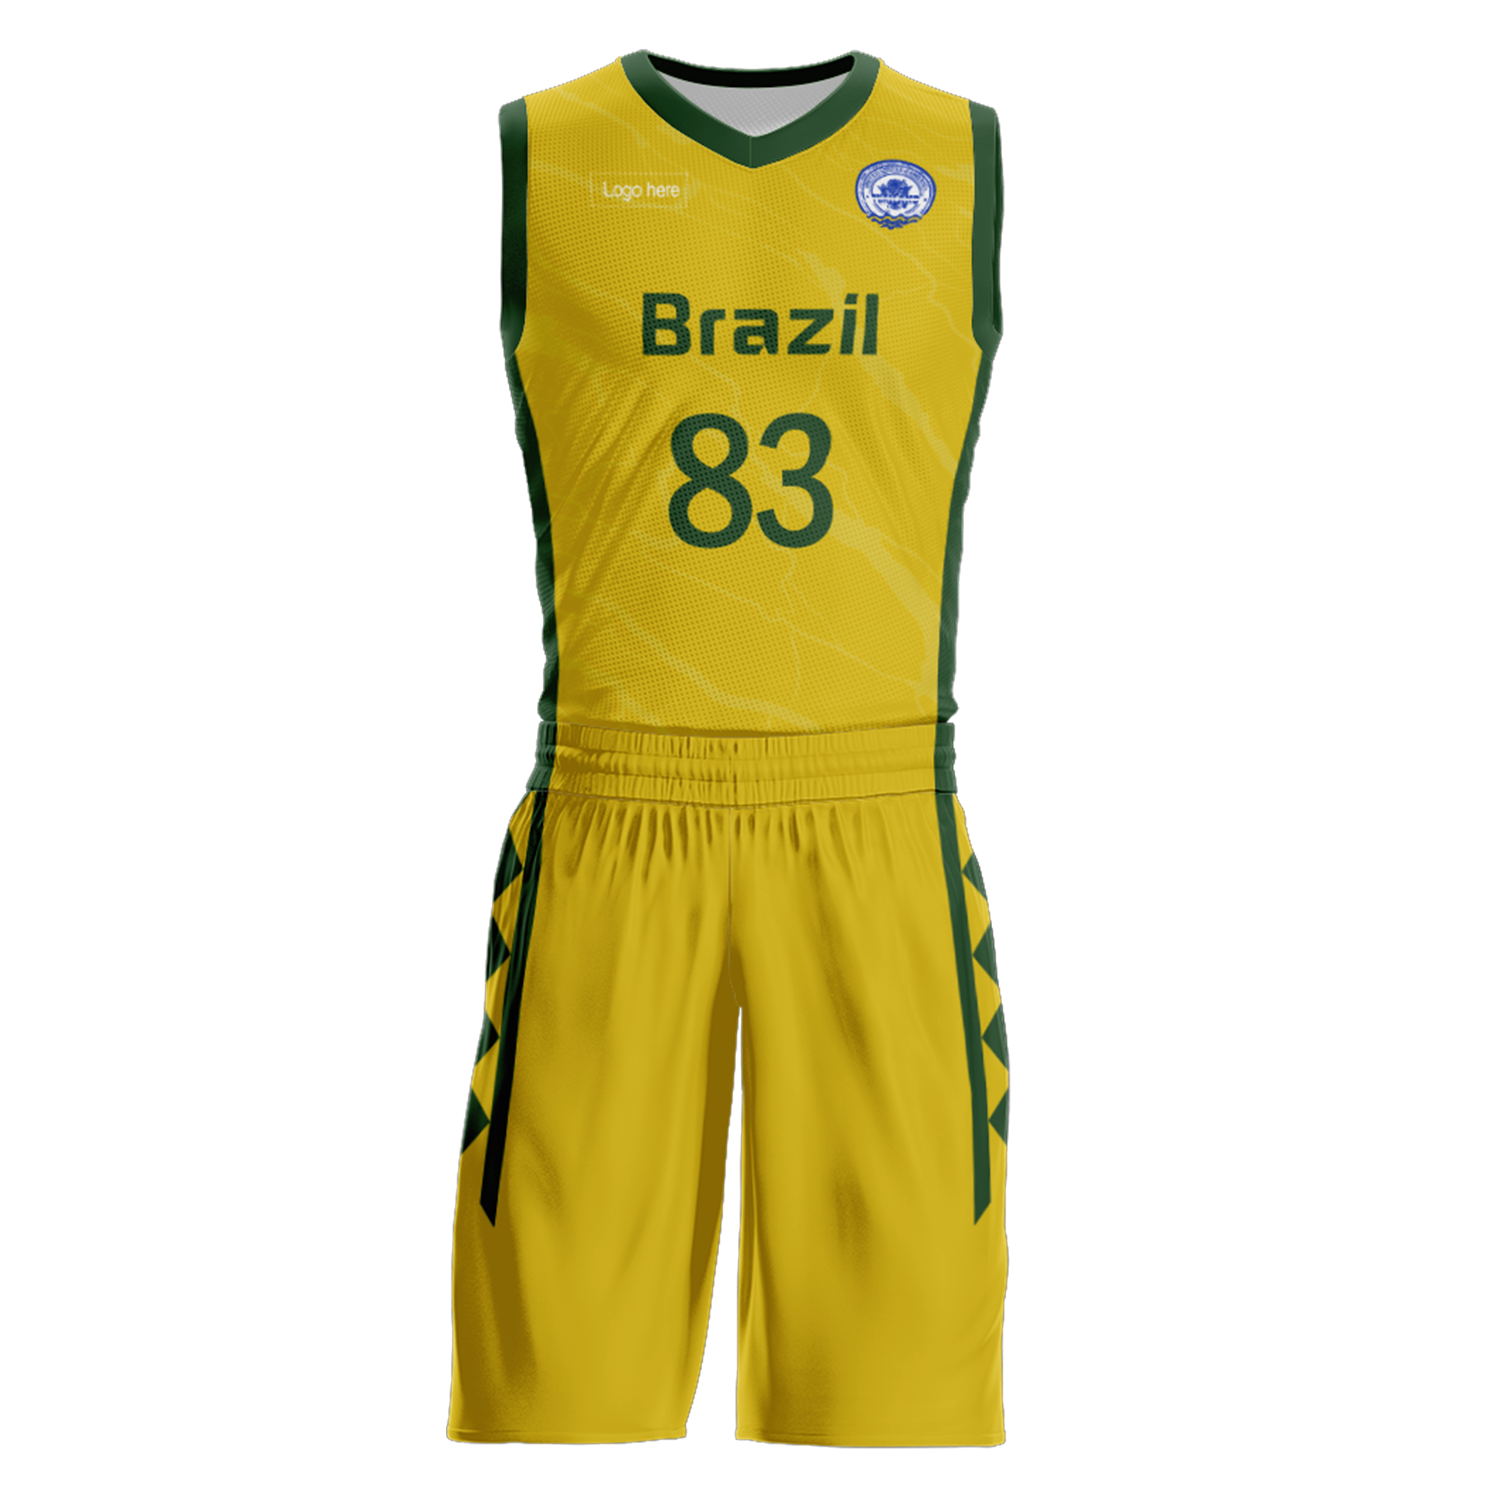 Kundenspezifische Brasilien-Team-Basketballanzüge